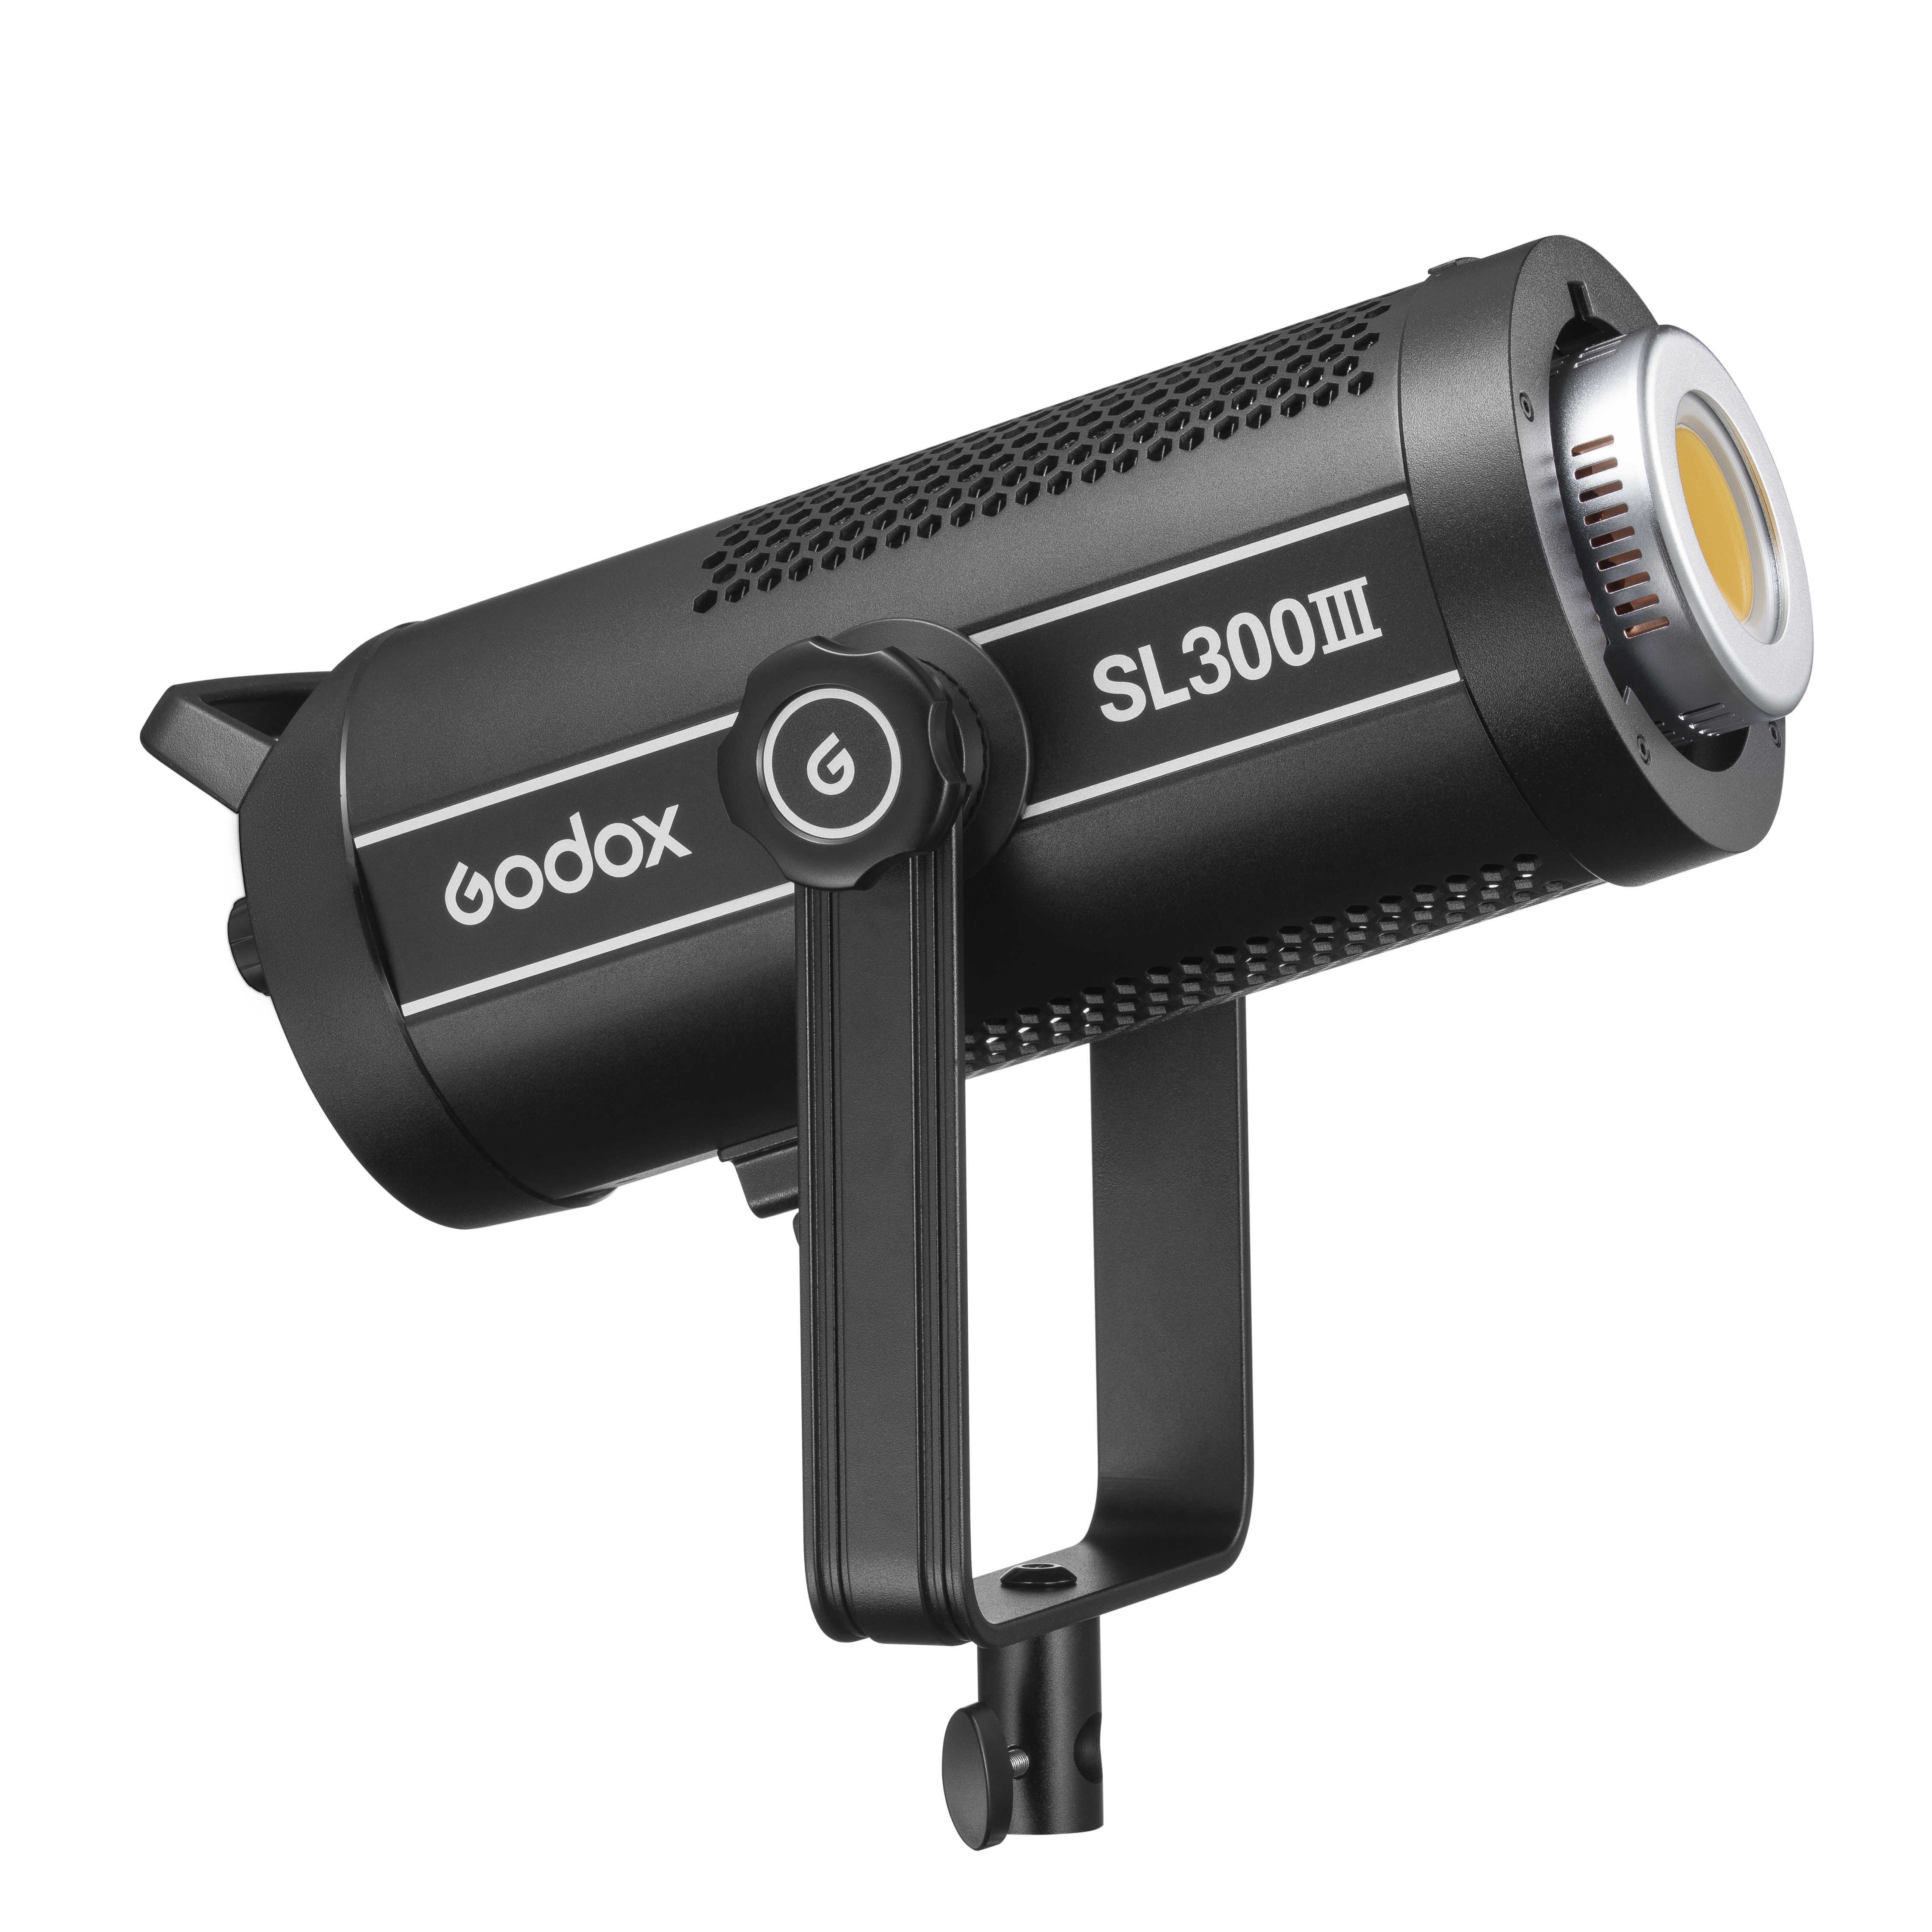    Godox SL300III    Ultra-mart